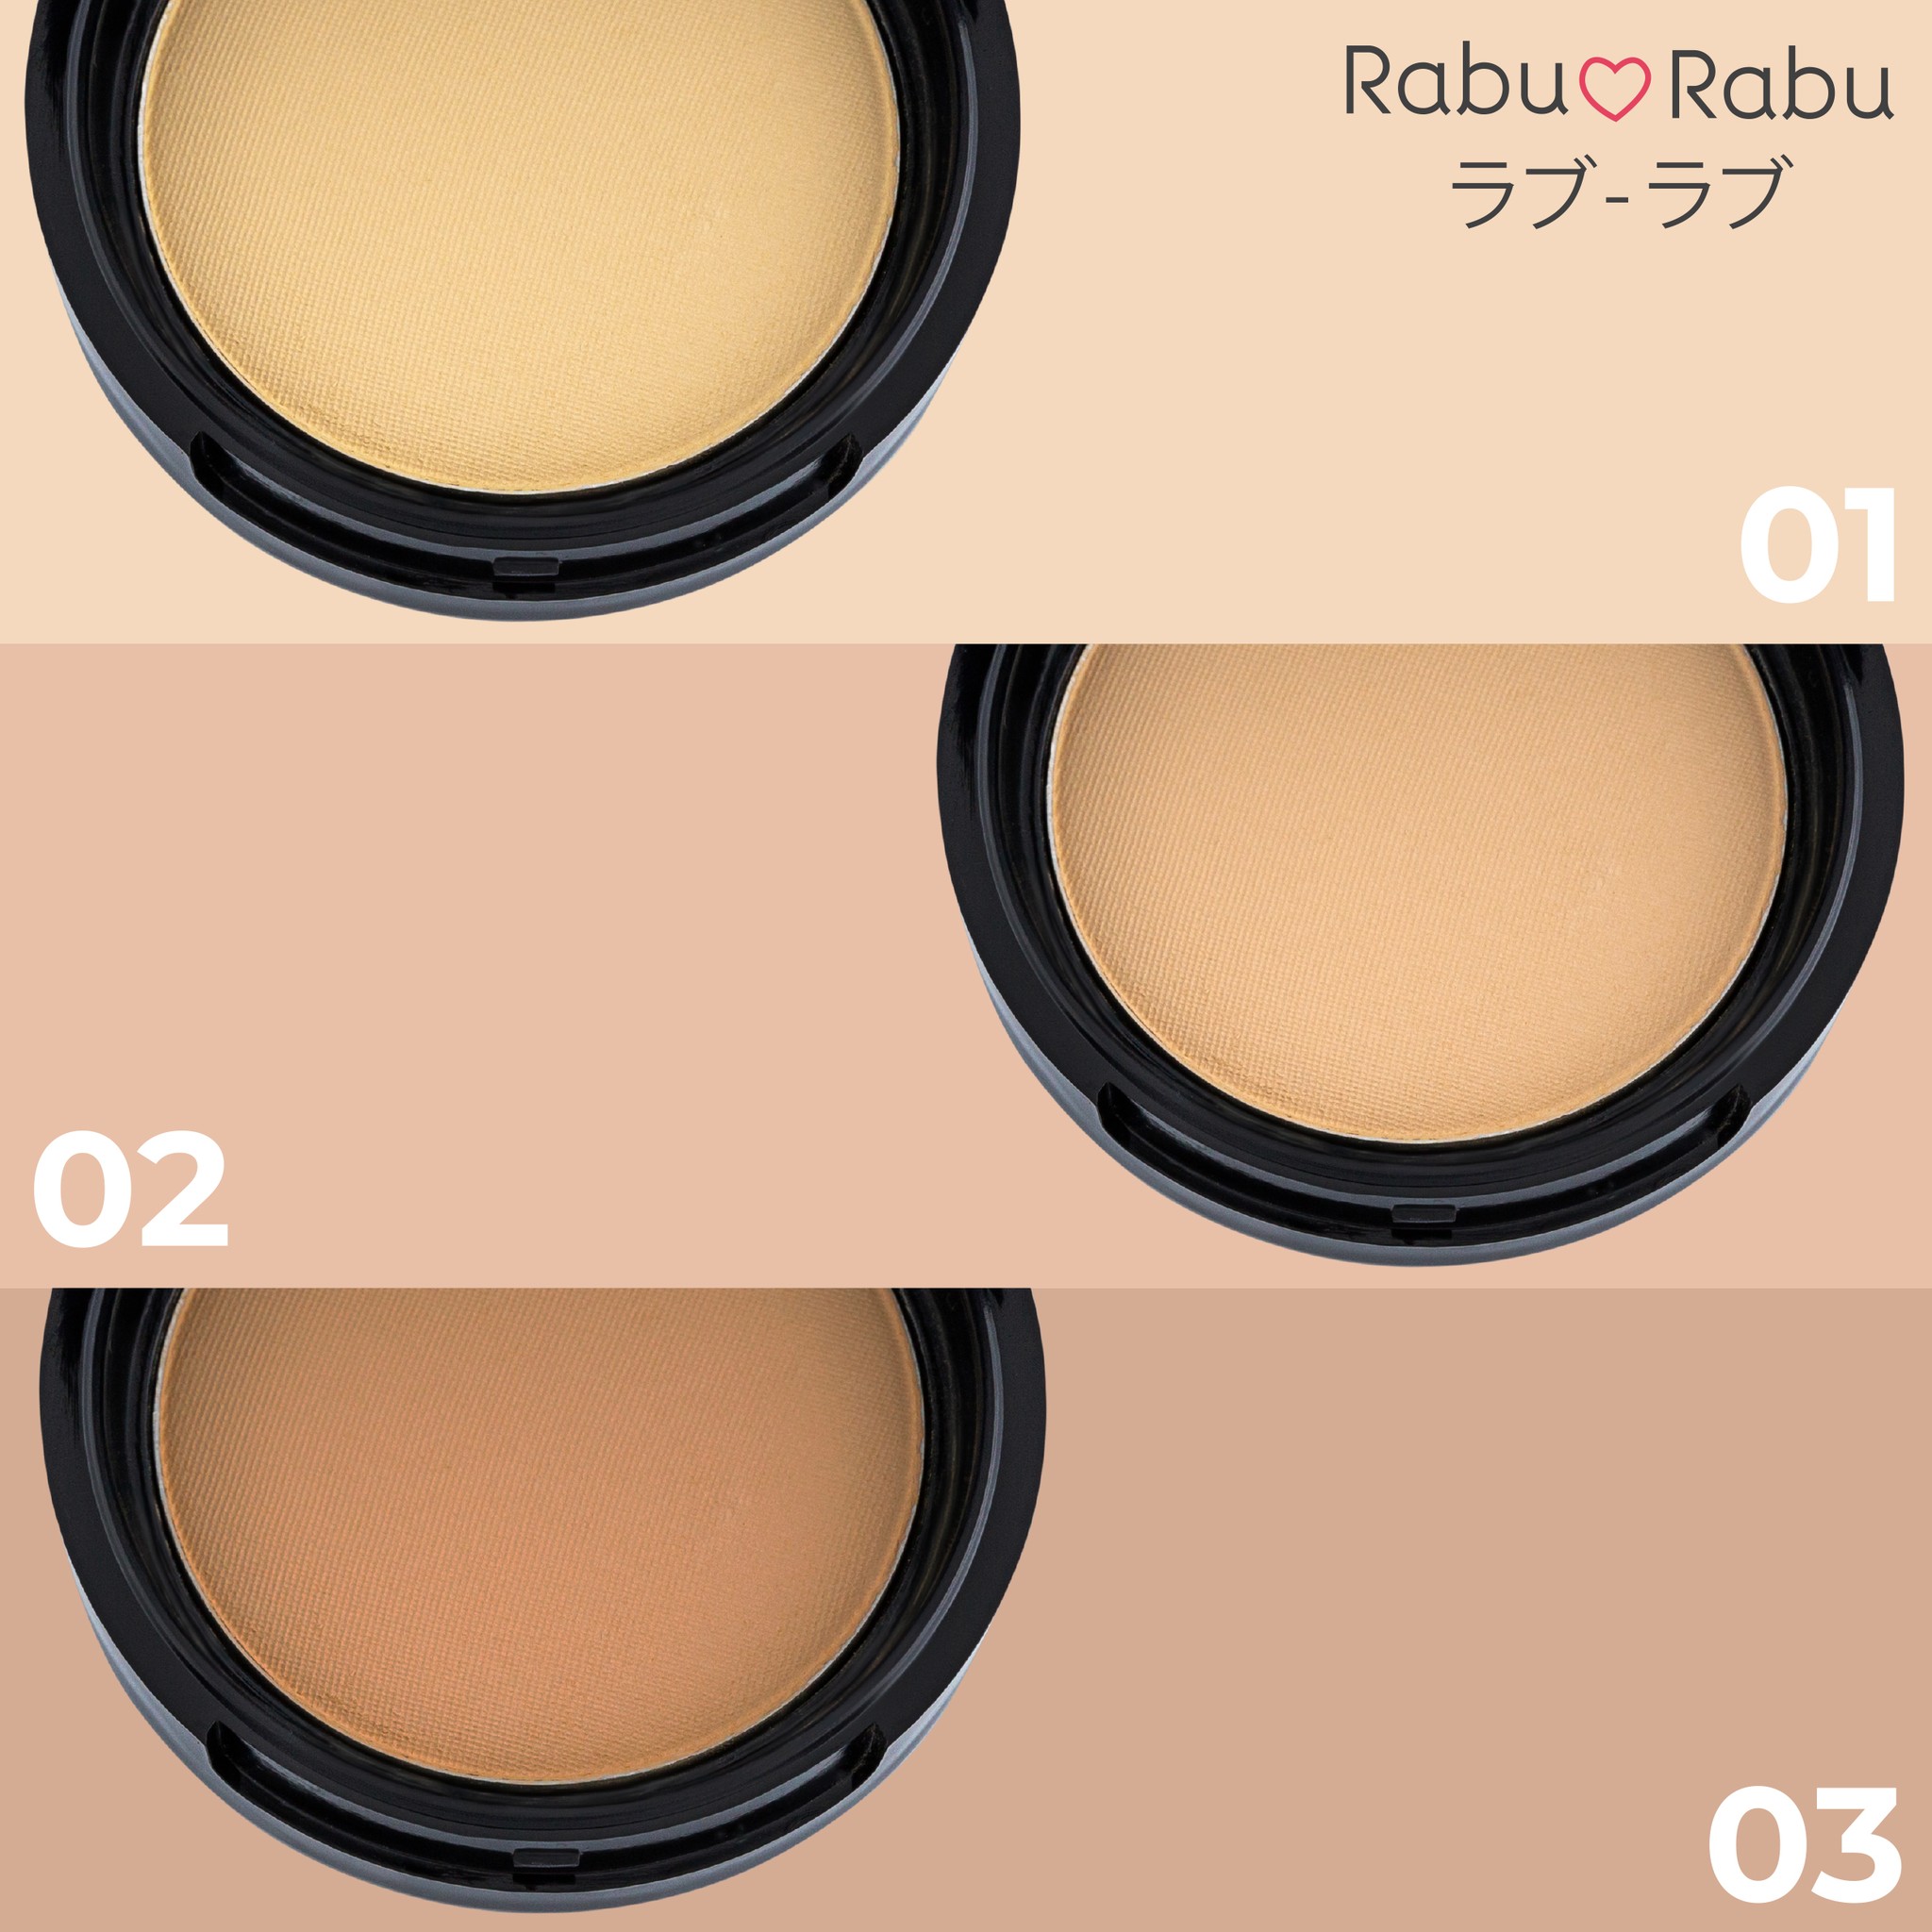 RABU RABU Photolight Compact Powder